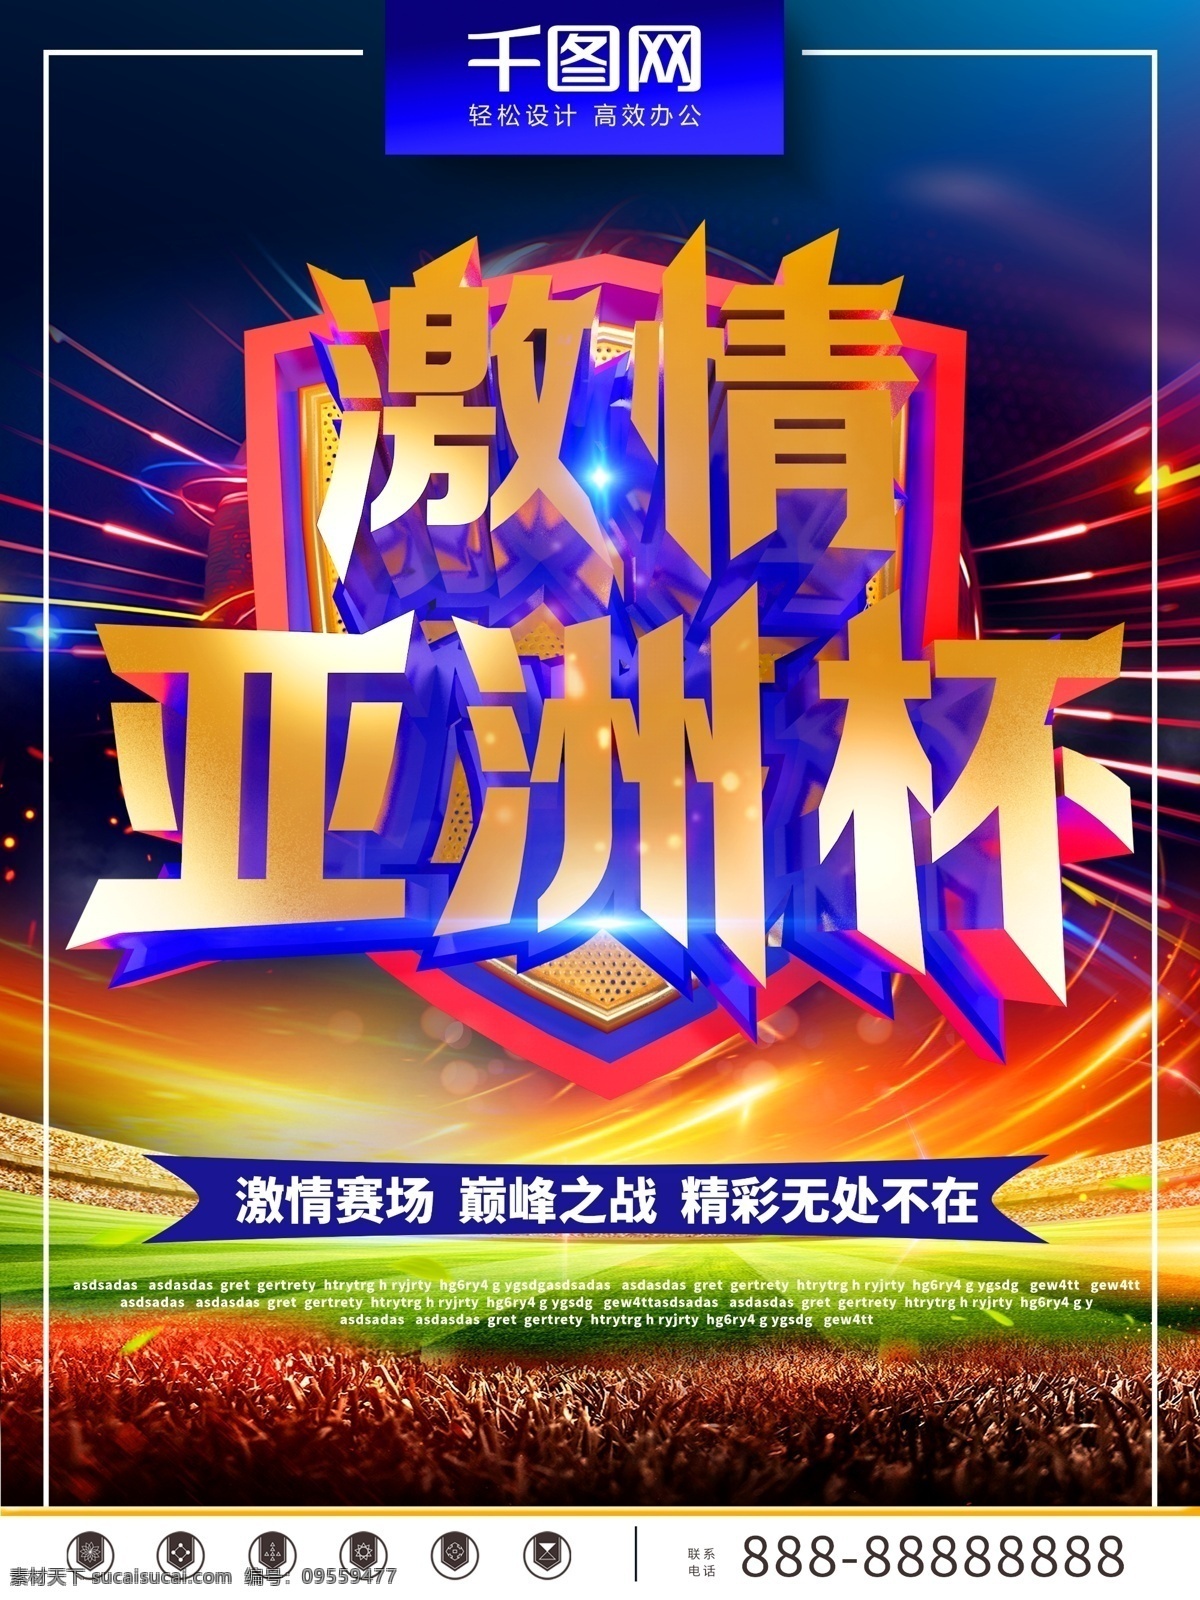 c4d 创意 激情 亚洲杯 海报 足球 足球背景 足球赛场 激情亚洲杯 亚洲杯背景 足球激情 亚洲足球